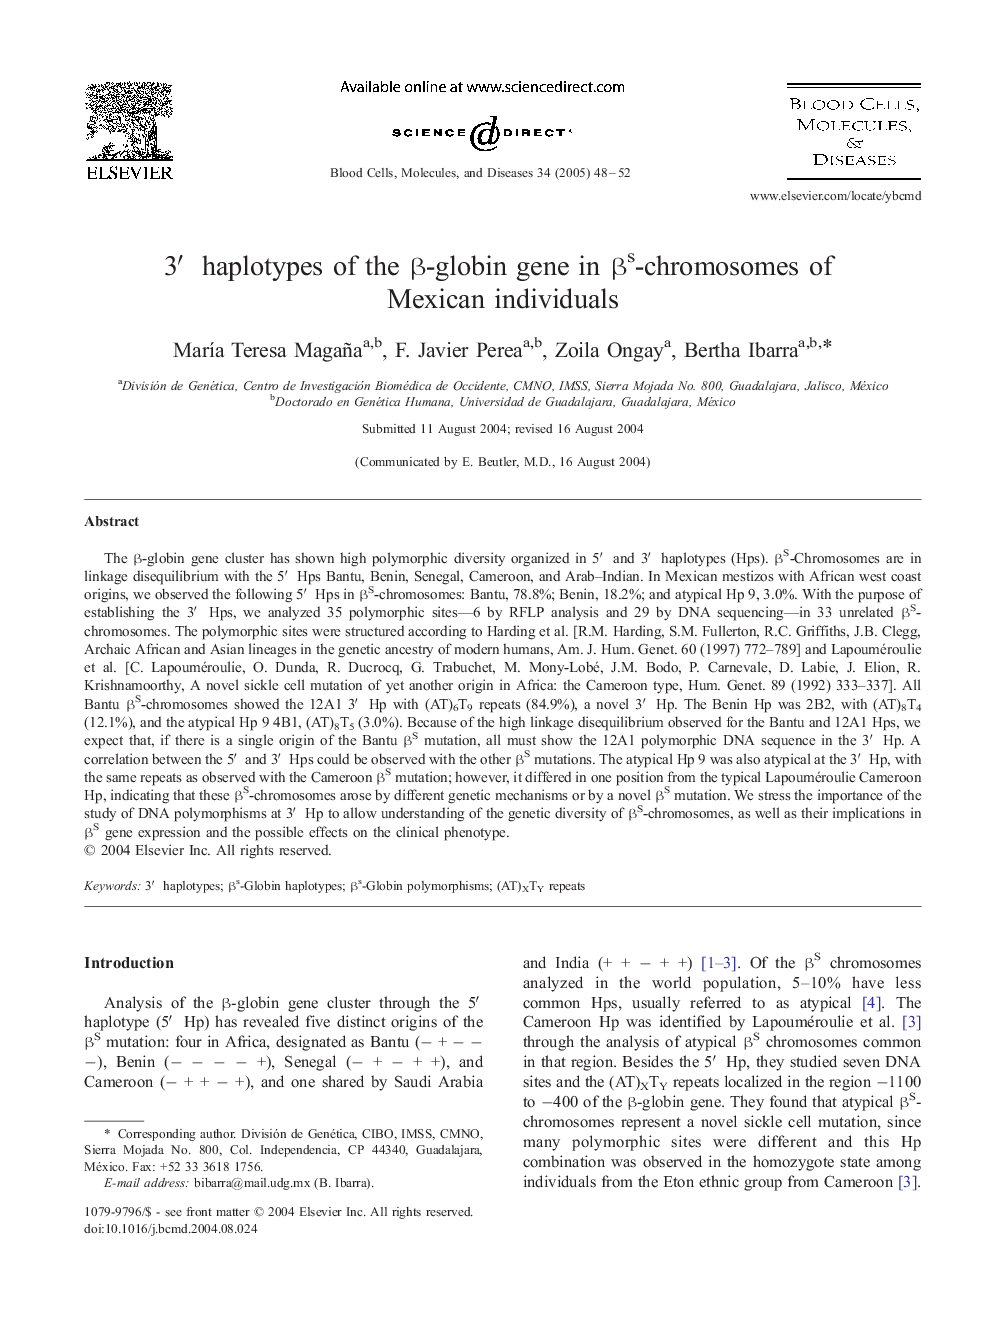 3â² haplotypes of the Î²-globin gene in Î²s-chromosomes of Mexican individuals